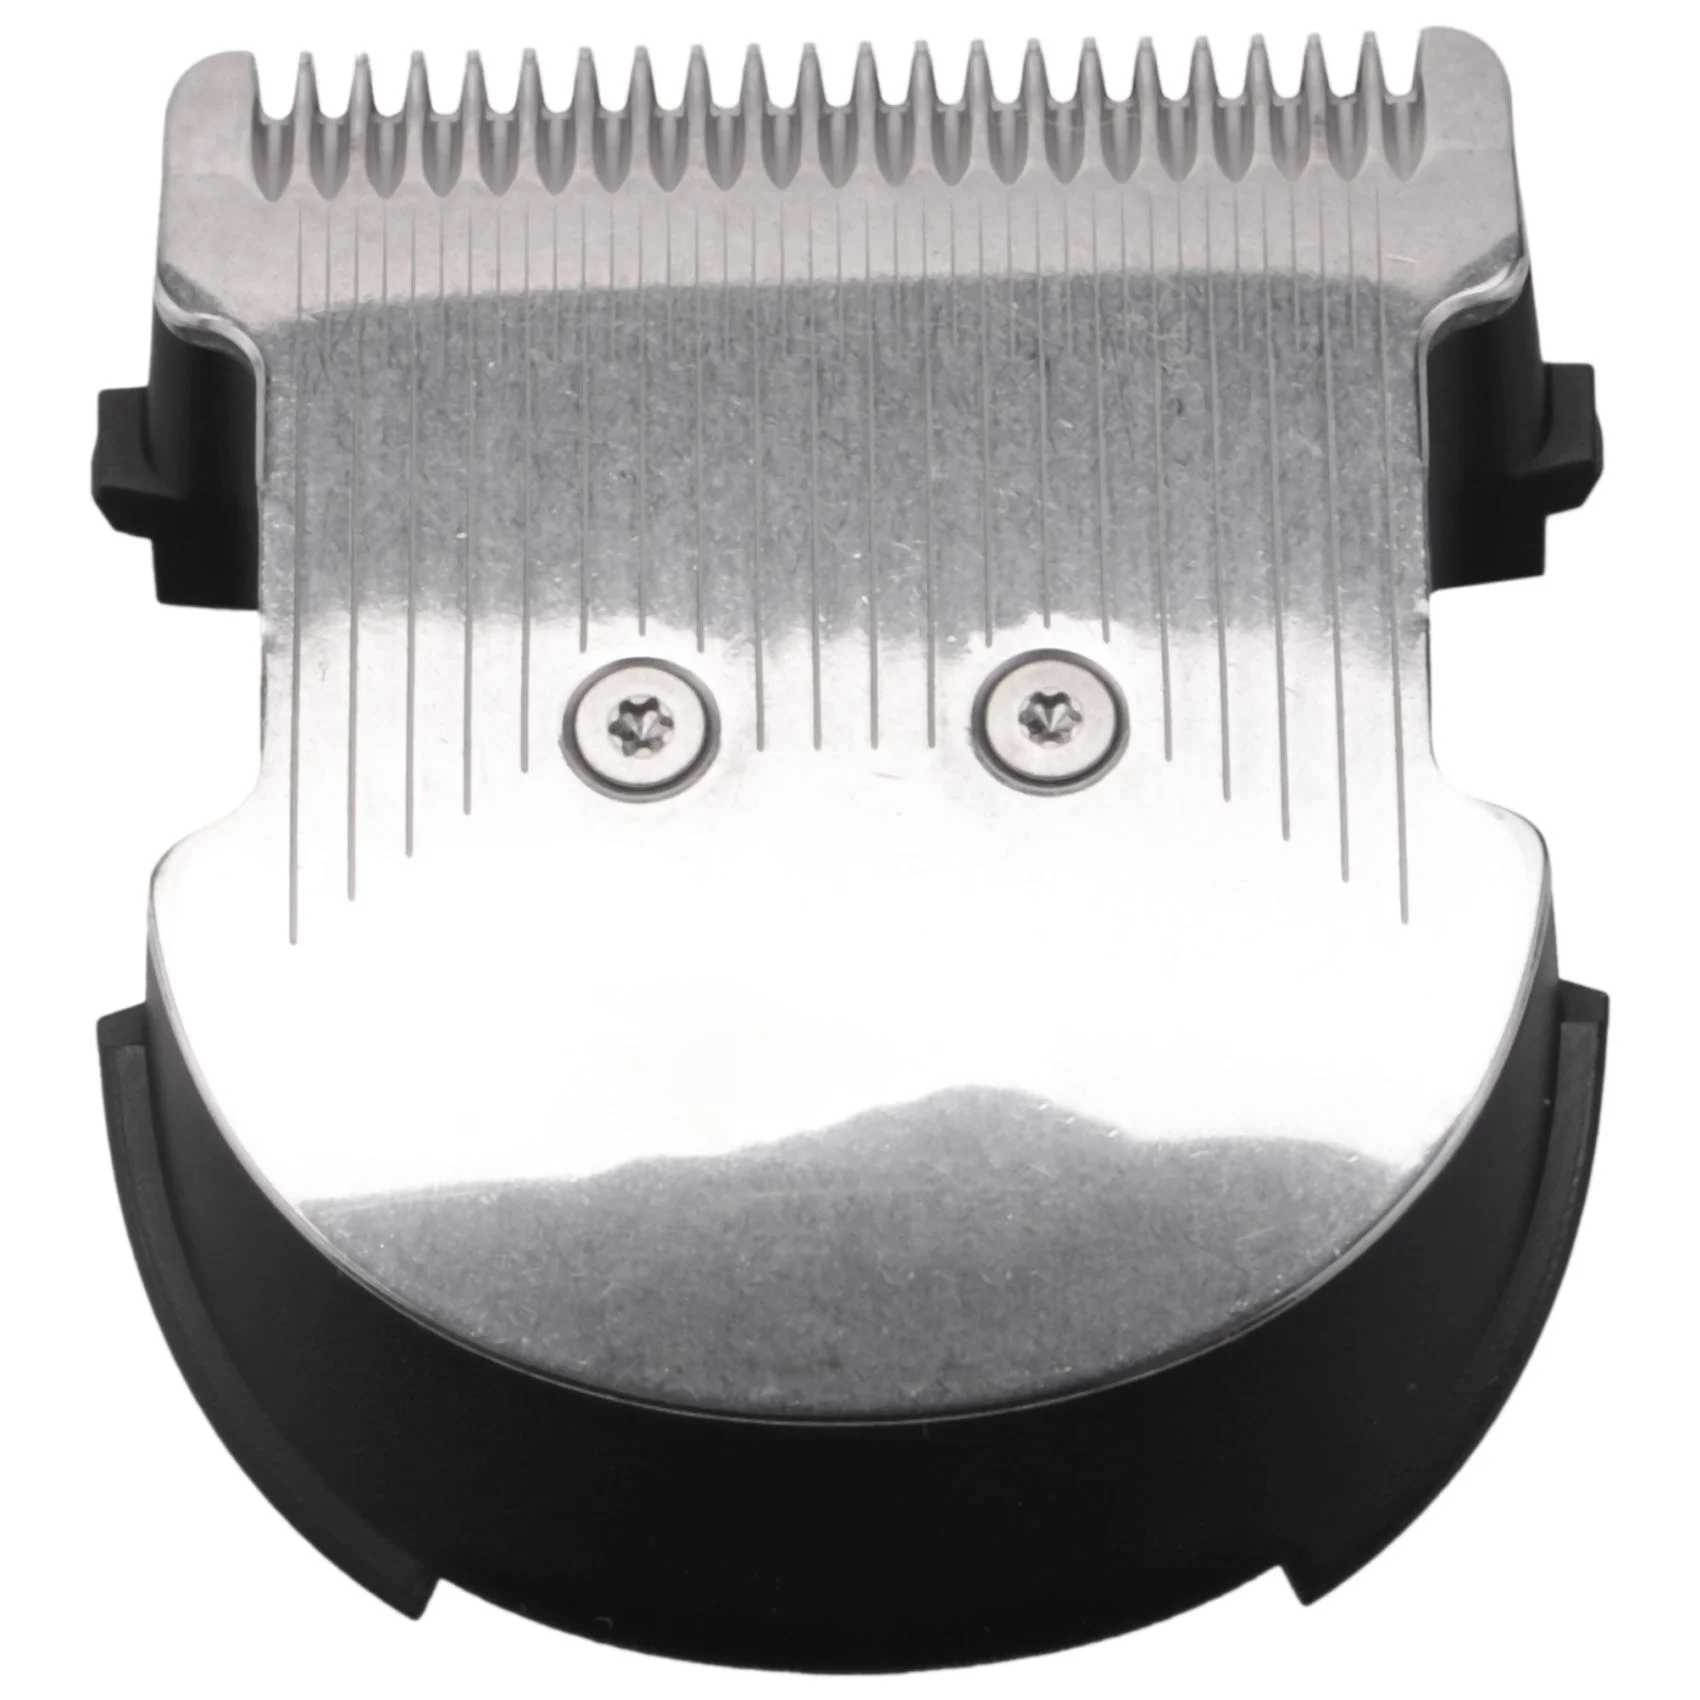 

Hair Cliipper Blade for Philips HC3400 HC3410 HC3420 HC3422 HC3426 3510 HC5410 HC5440 HC5442 HC5446 HC5447 HC5450